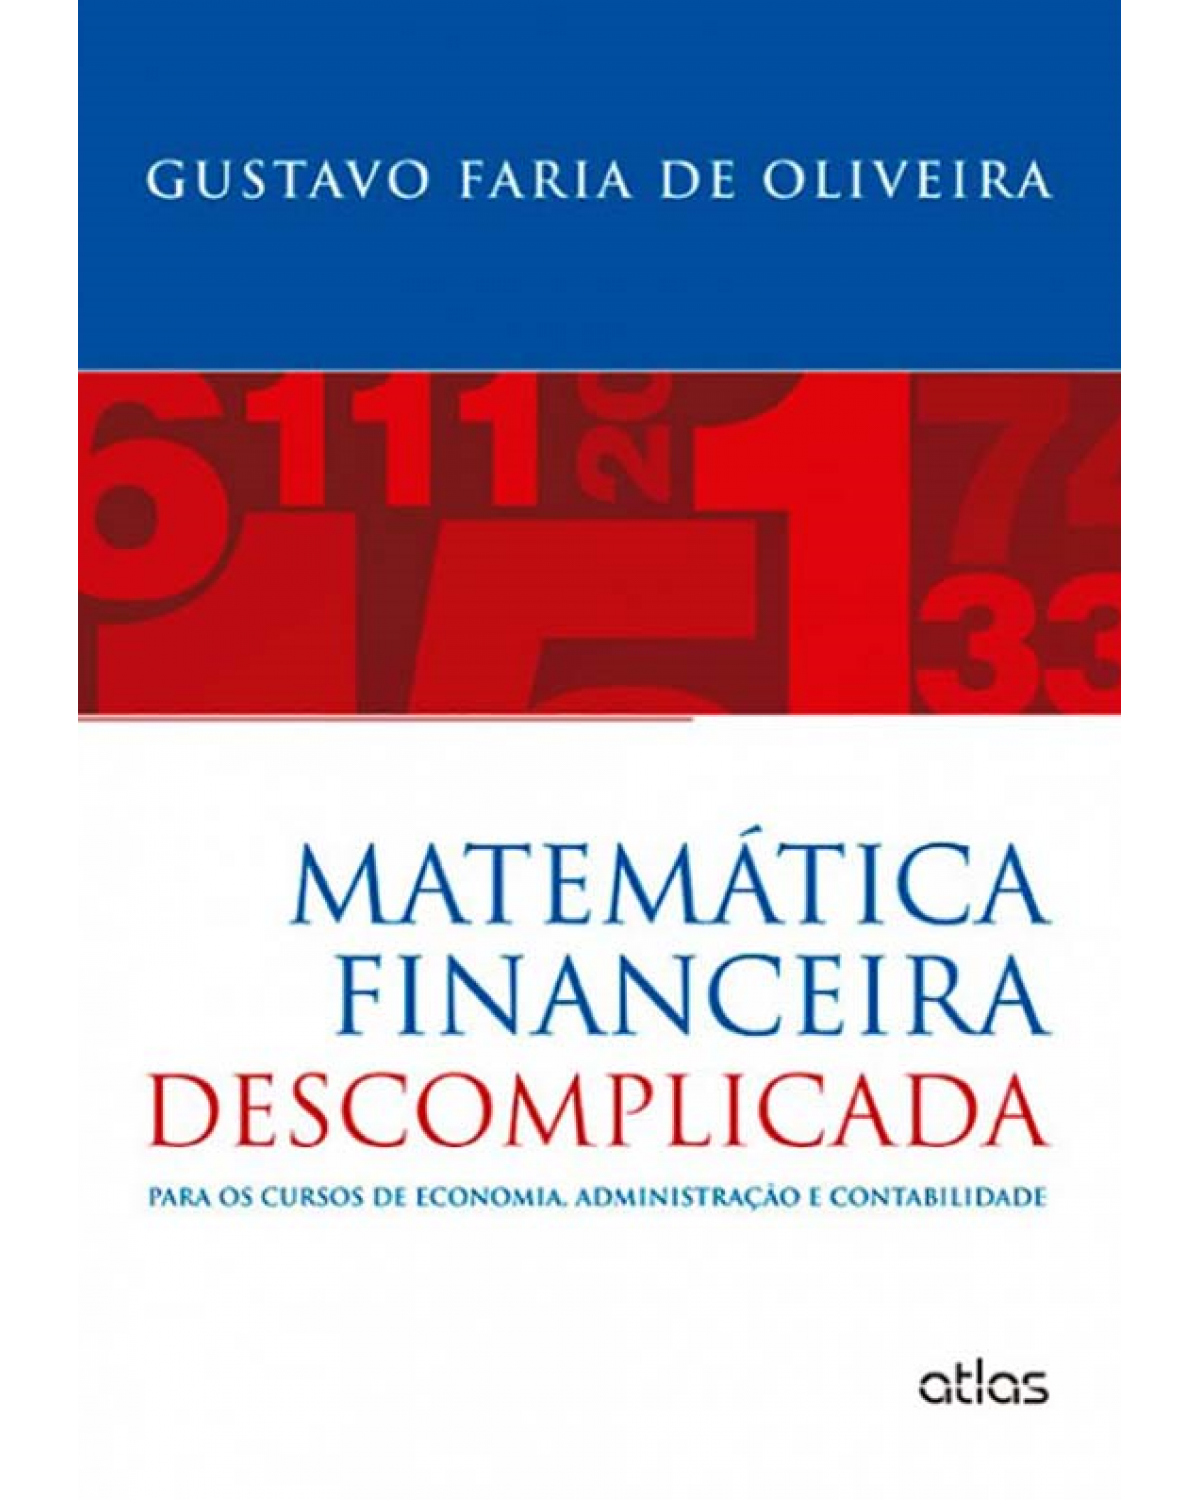 Matemática financeira descomplicada - Para os cursos de economia, administração e contabilidade - 1ª Edição | 2013